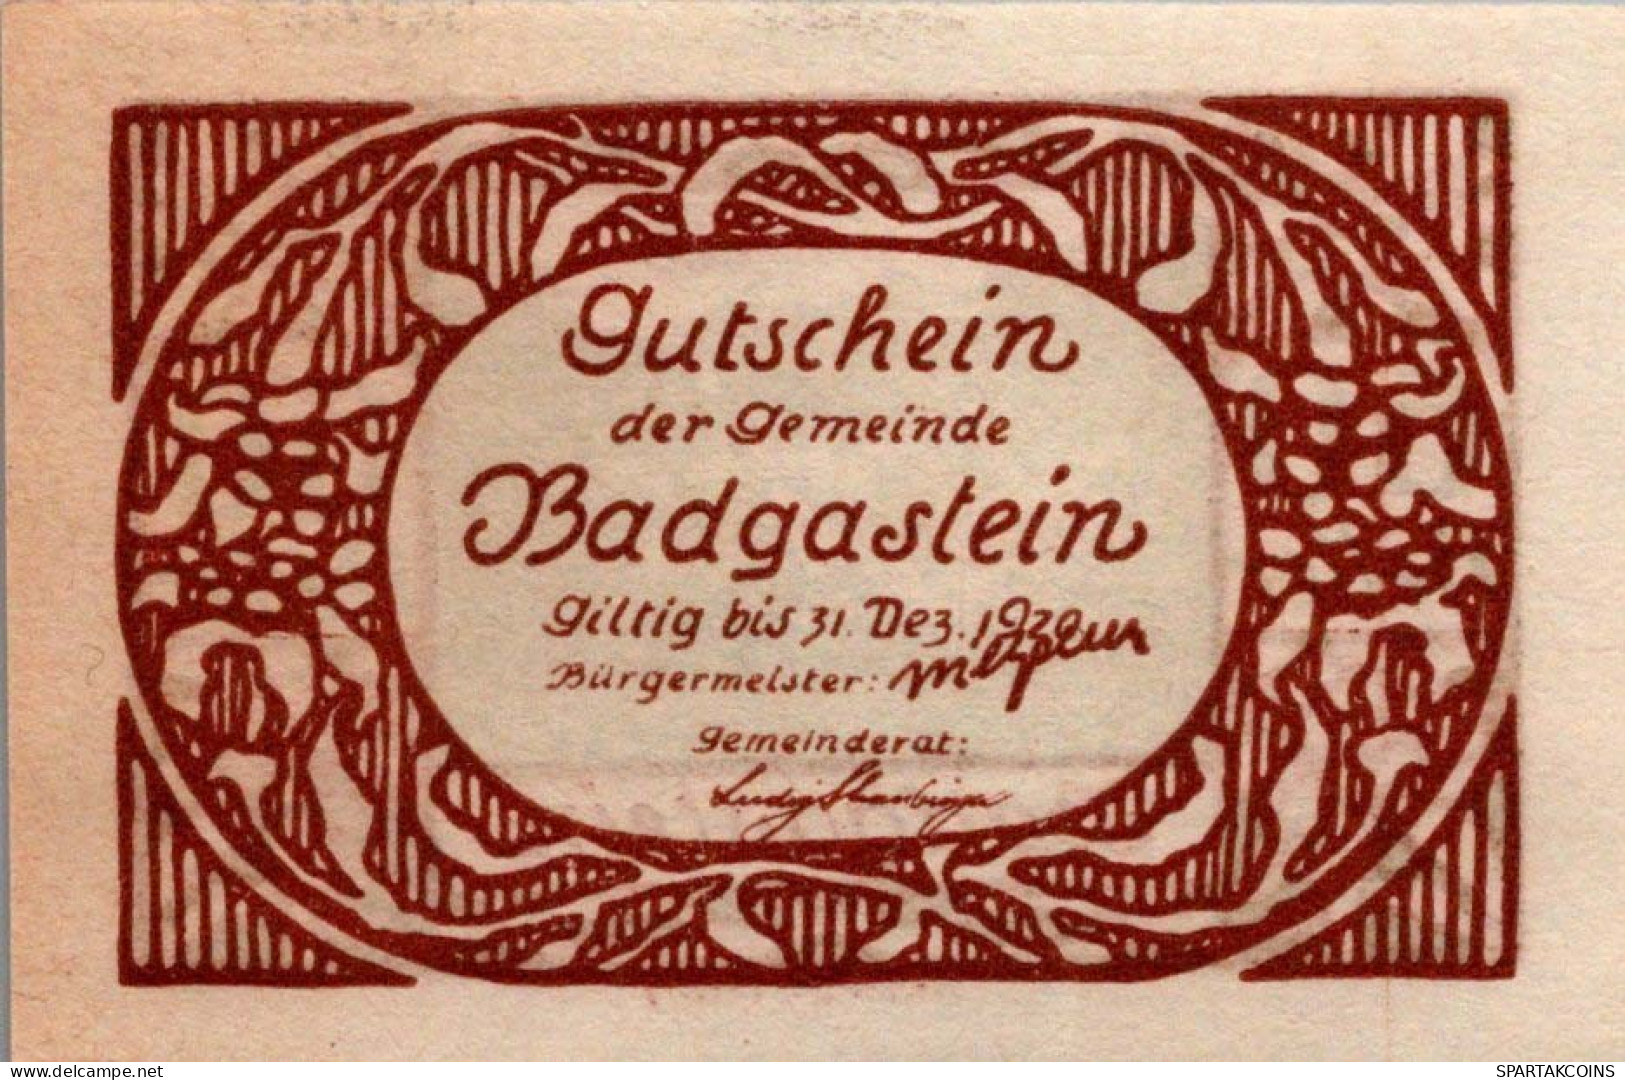 60 HELLER 1920 Stadt BAD GASTEIN Salzburg Österreich Notgeld Banknote #PF362 - Lokale Ausgaben